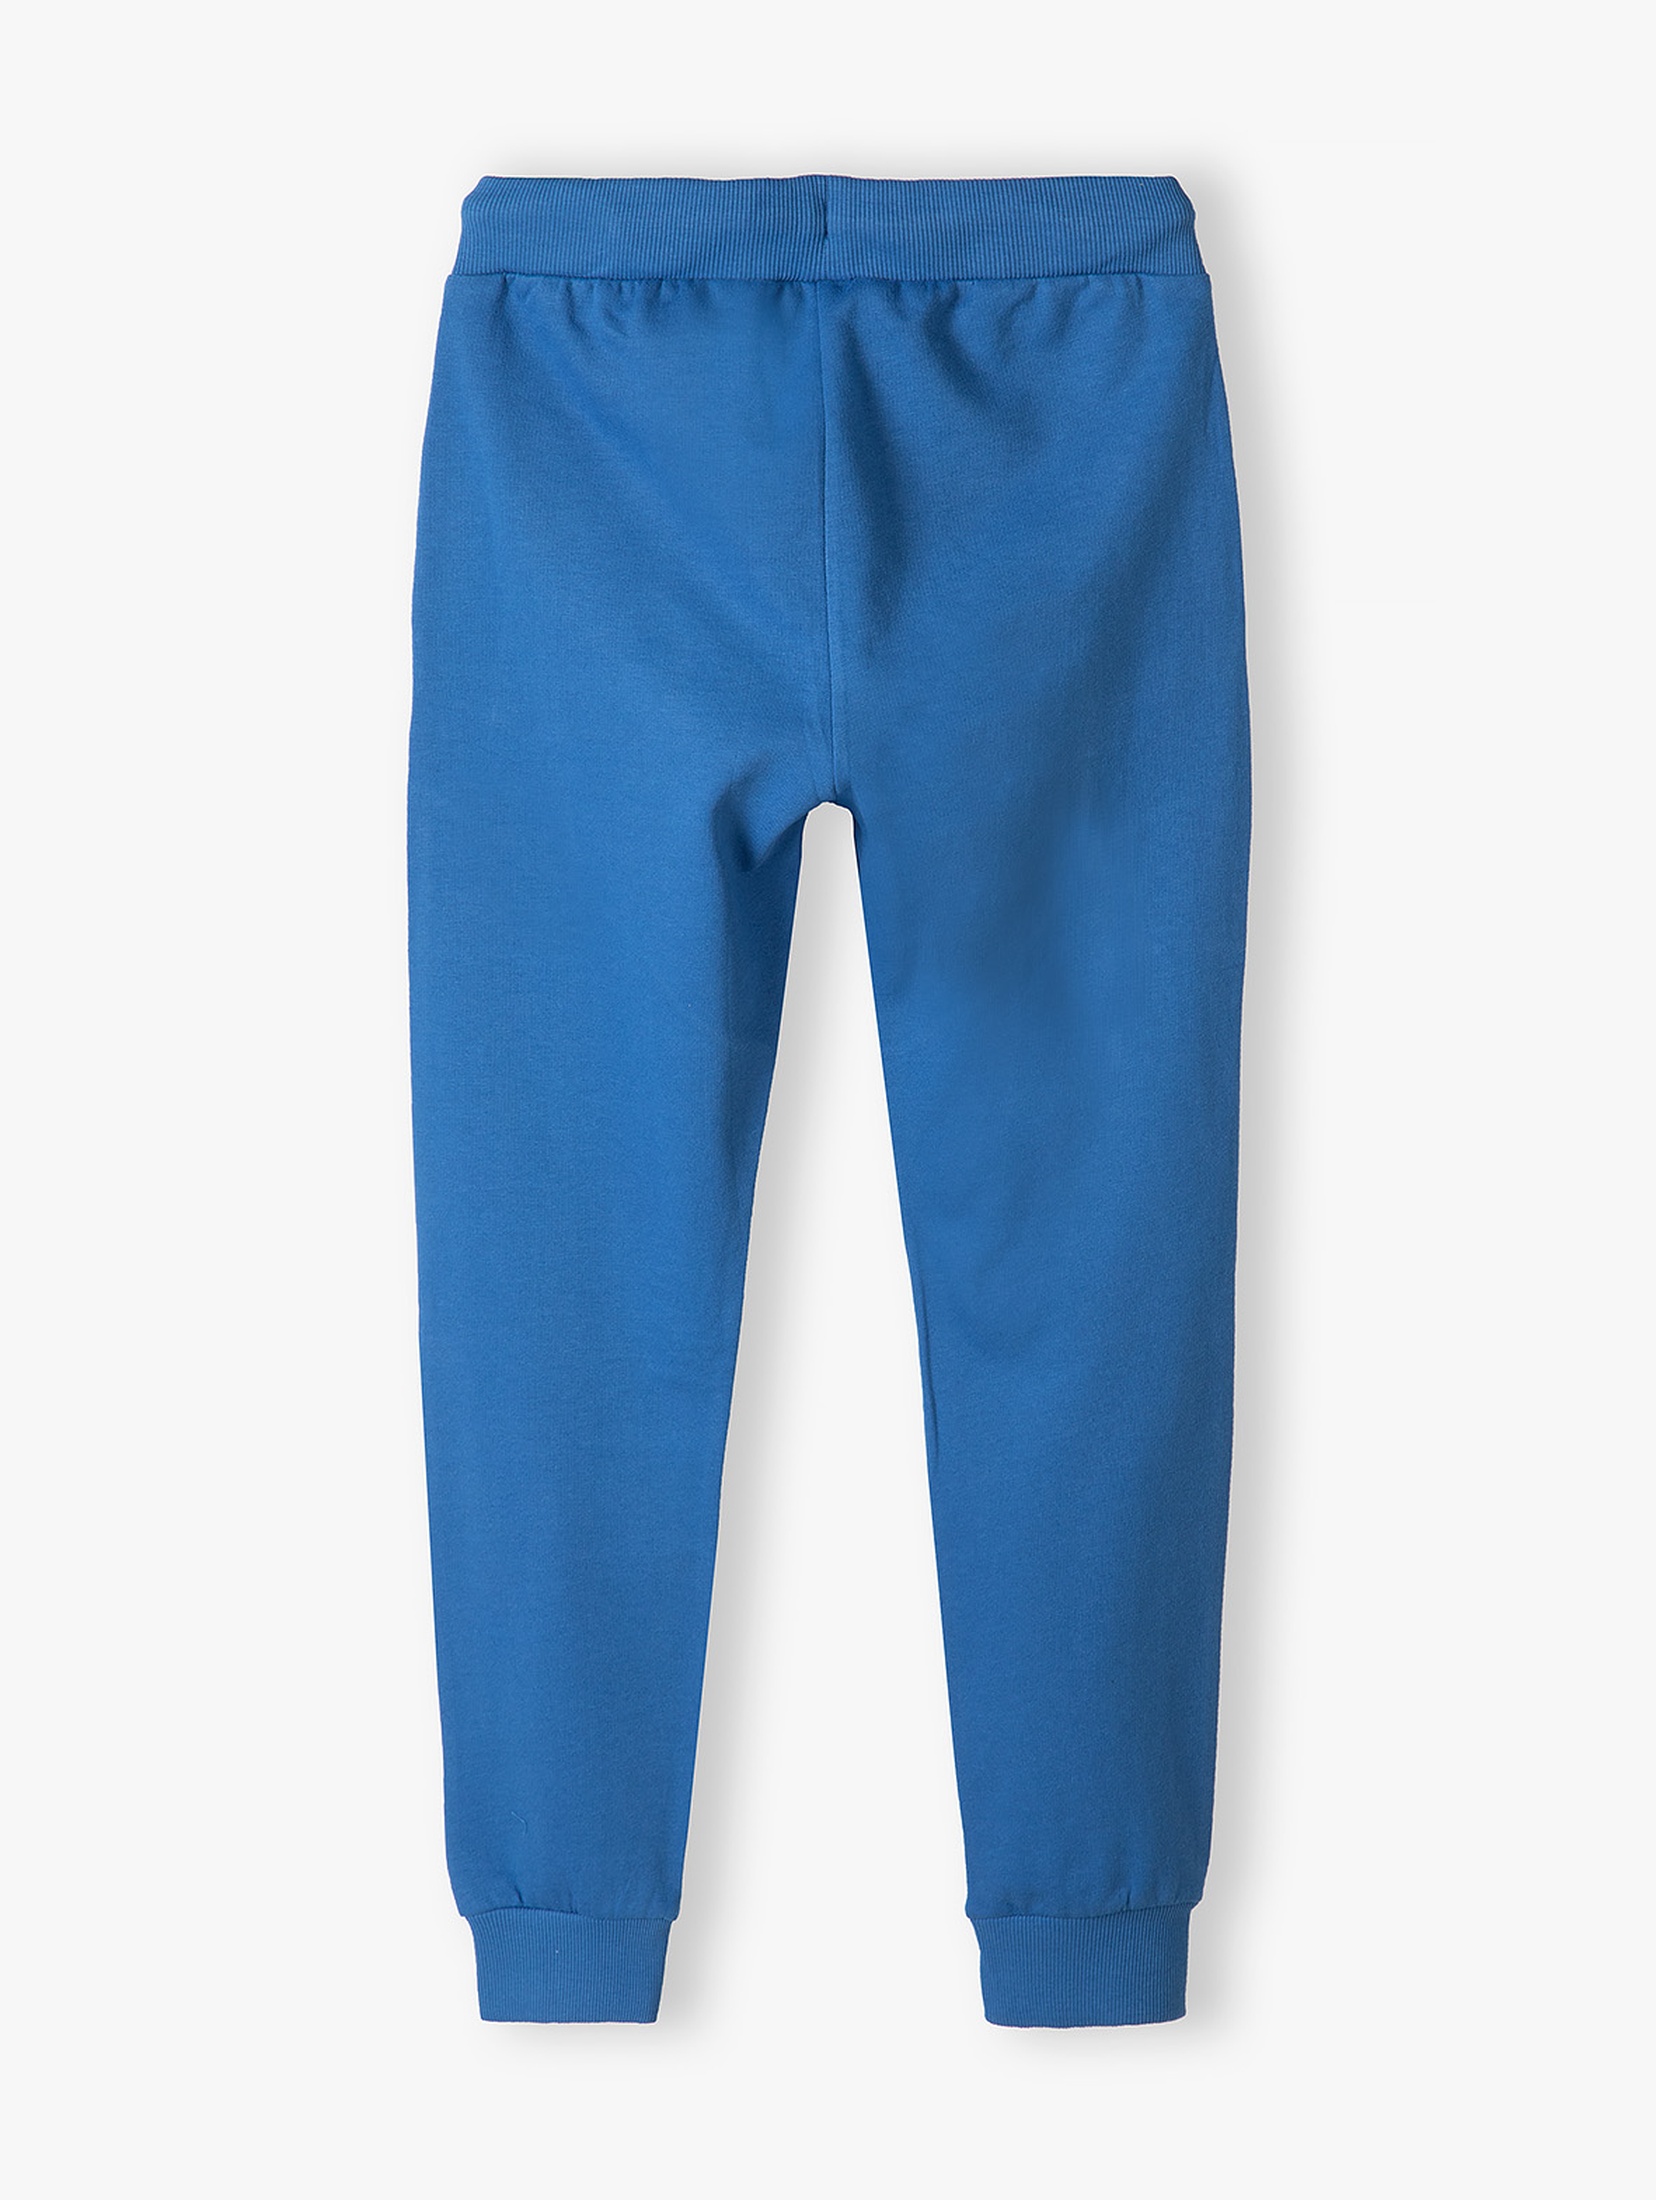 Niebieskie spodnie dresowe bawełniane dla chłopca regular